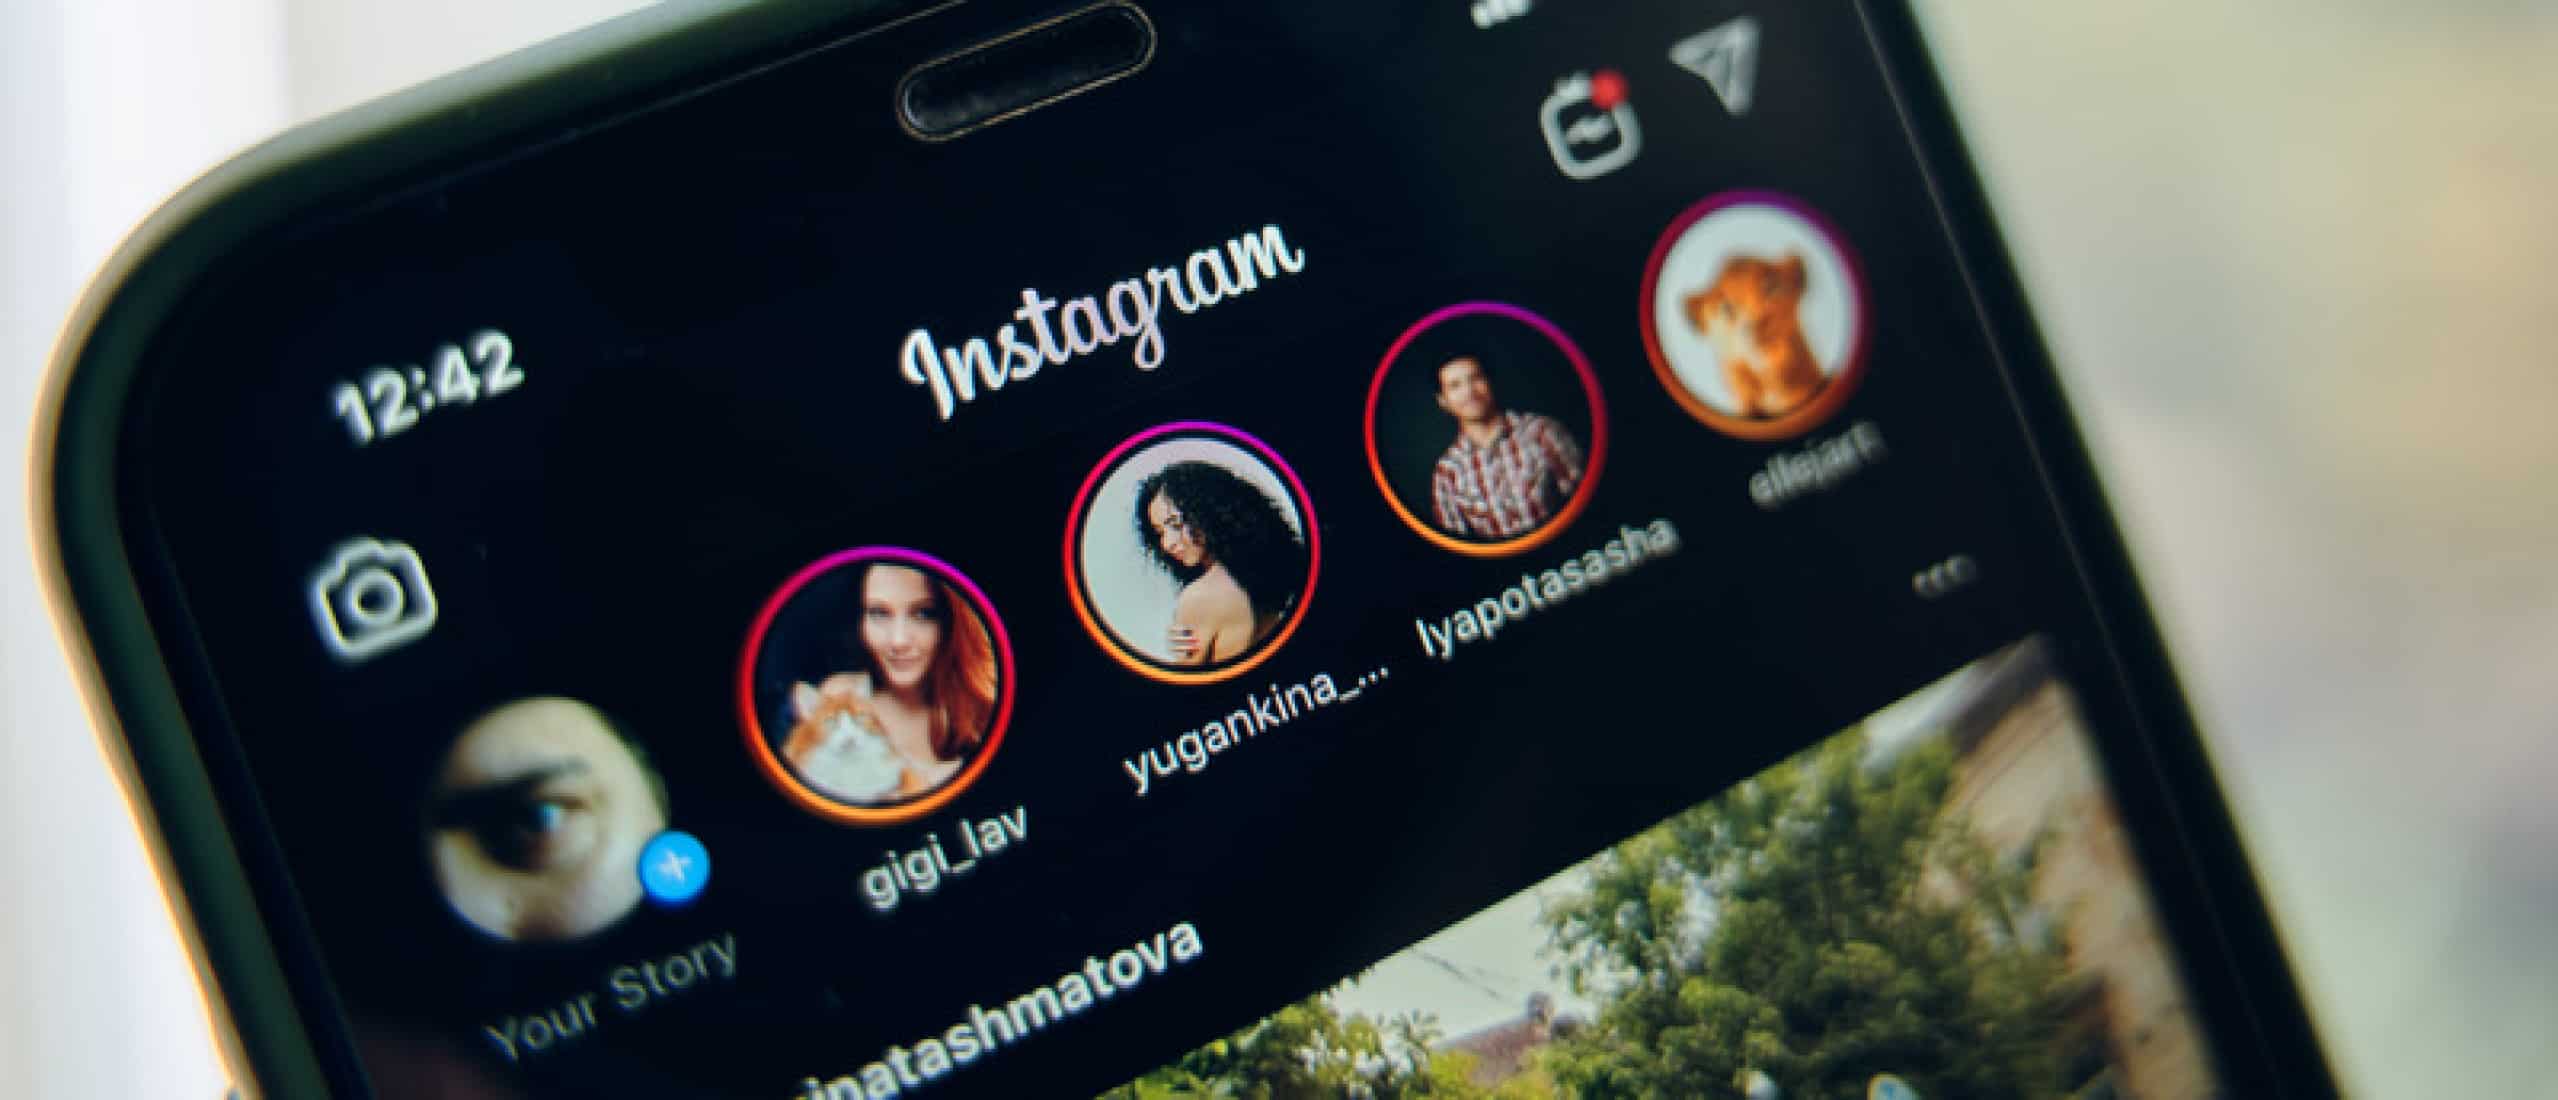 engagement verhogen met Instagram Stories